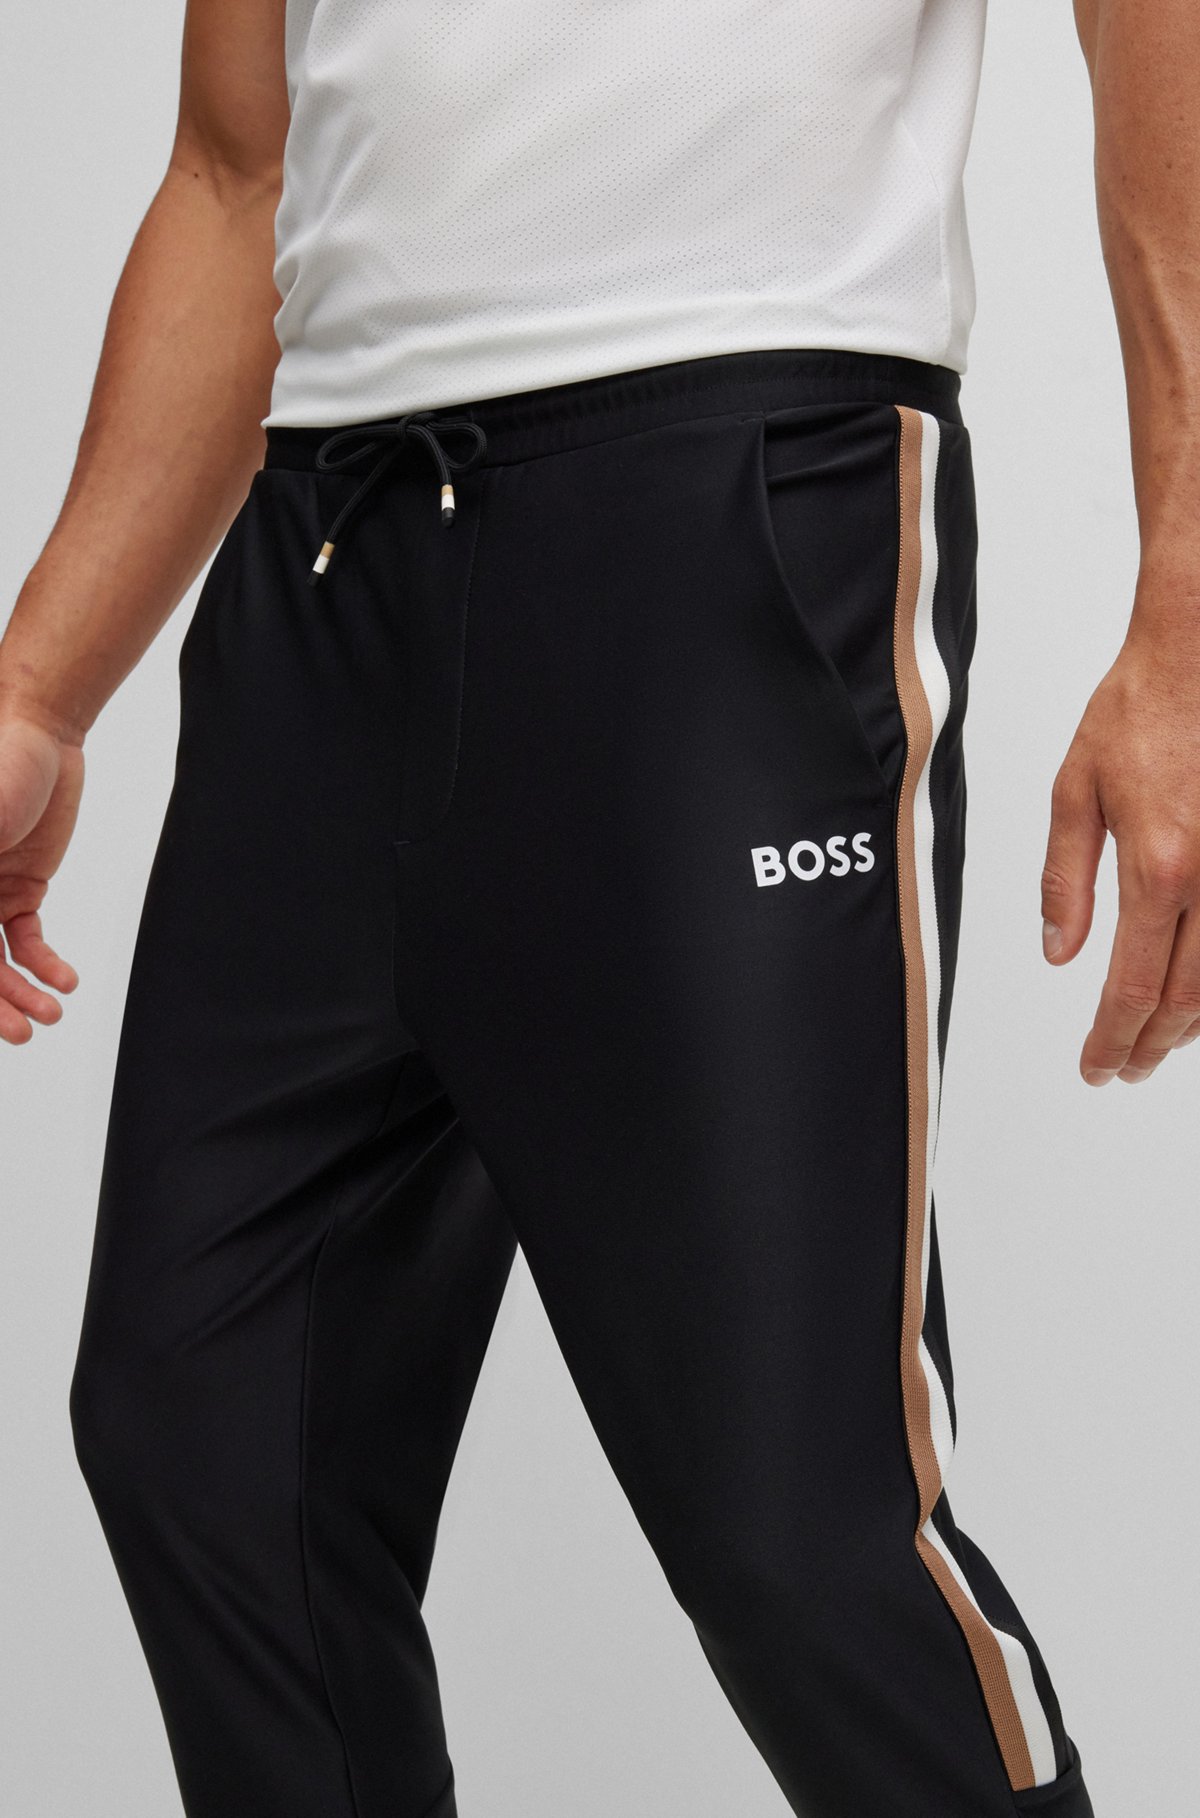 BOSS x Matteo Berrettini Jogginghose mit Streifen und Logo, Schwarz